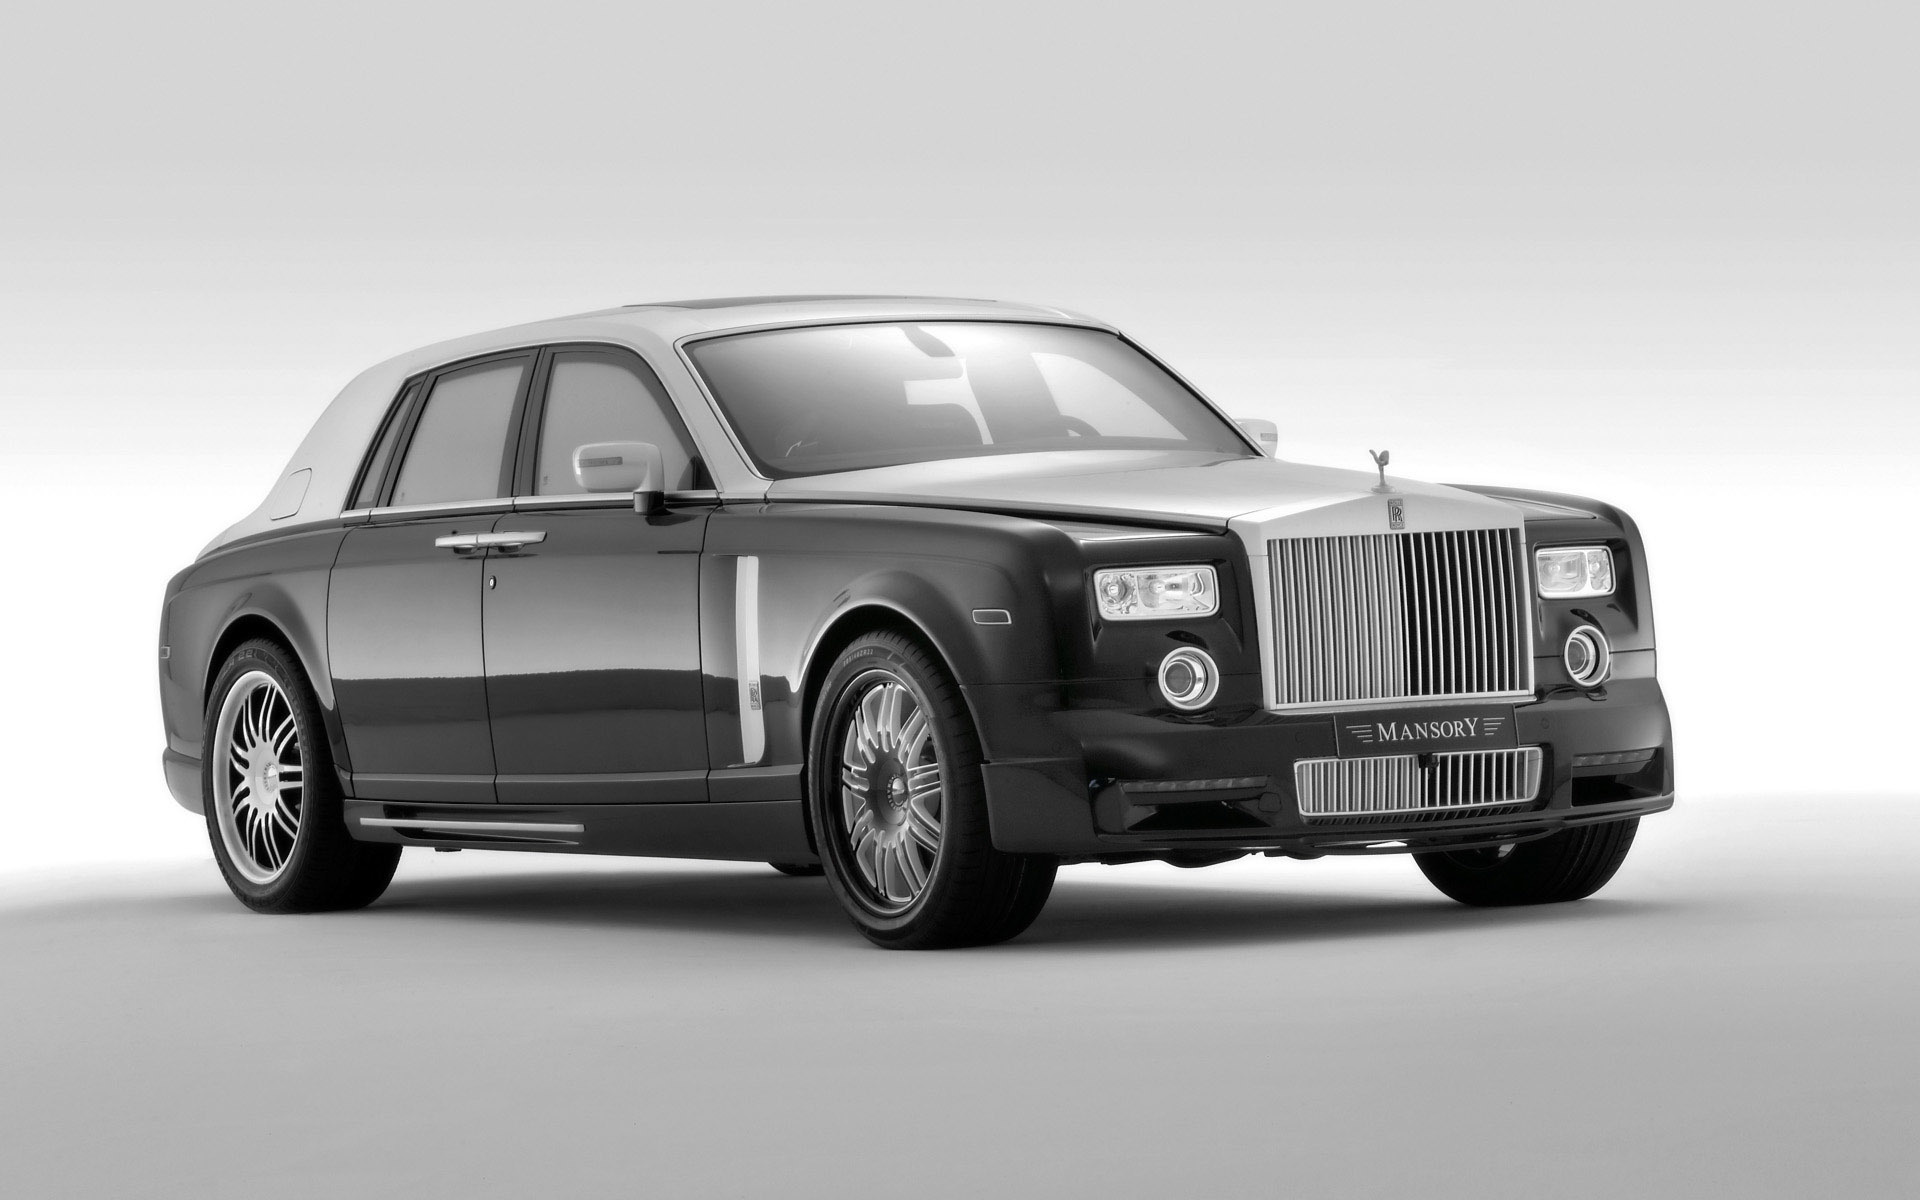 Фигура превосходной роскошной машины Rolls-Royce, возносящейся на волне эксклюзивности